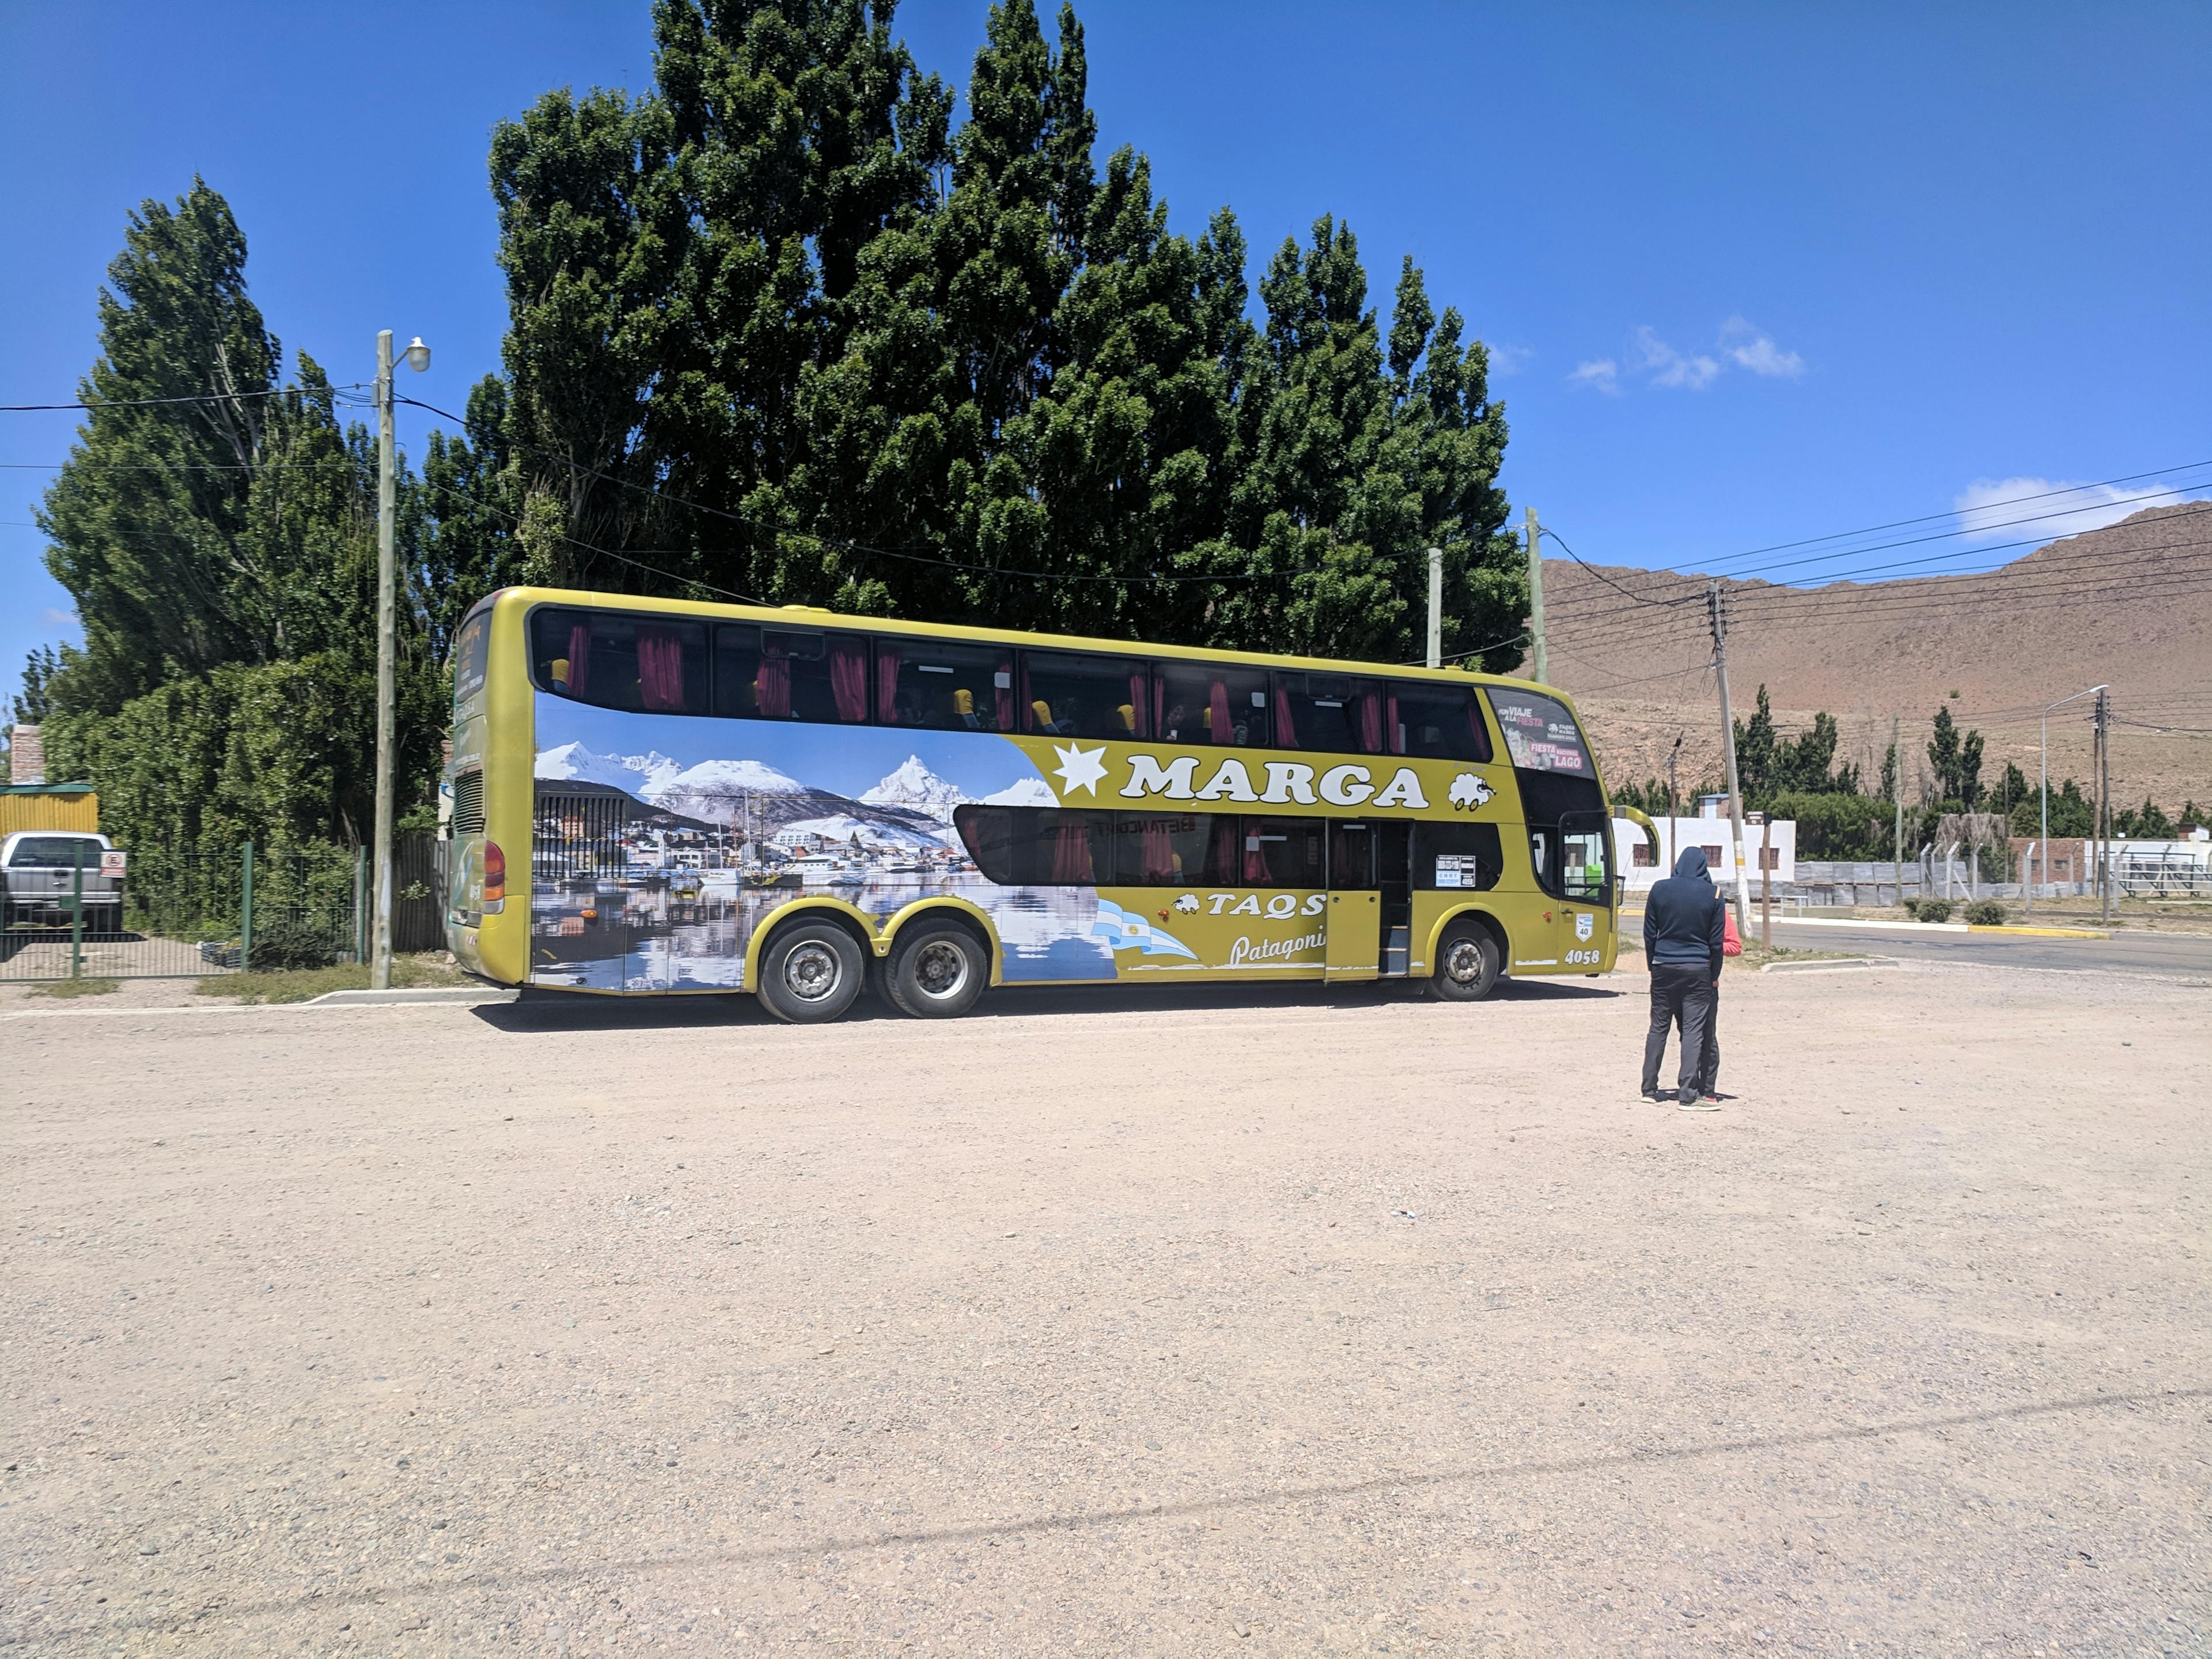 The bus to El Chaltén